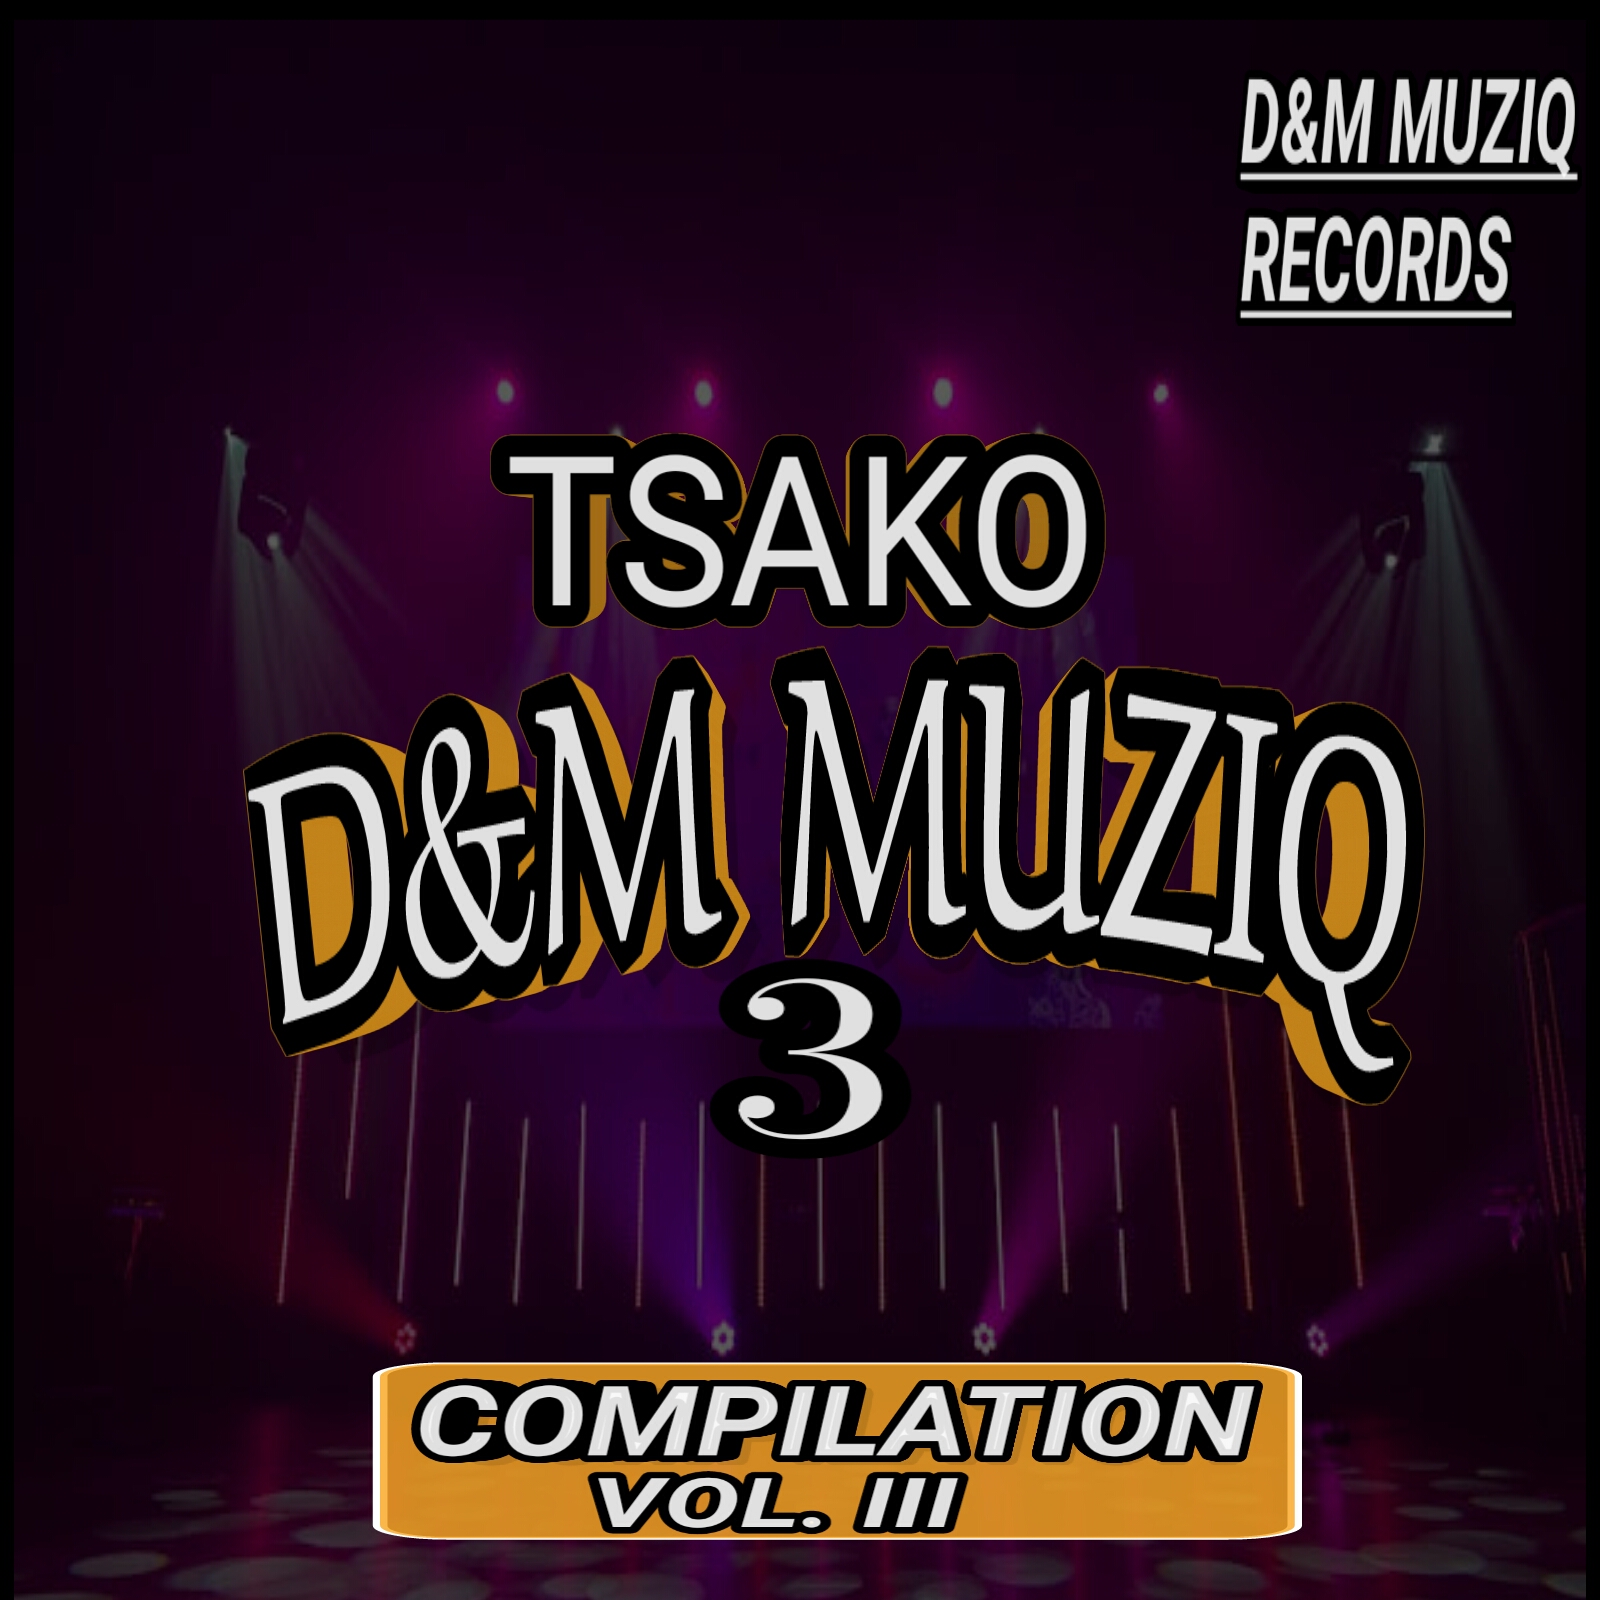 TSAKO D&M MUZIQ, VOL.3 COMPILATION - Various Artists